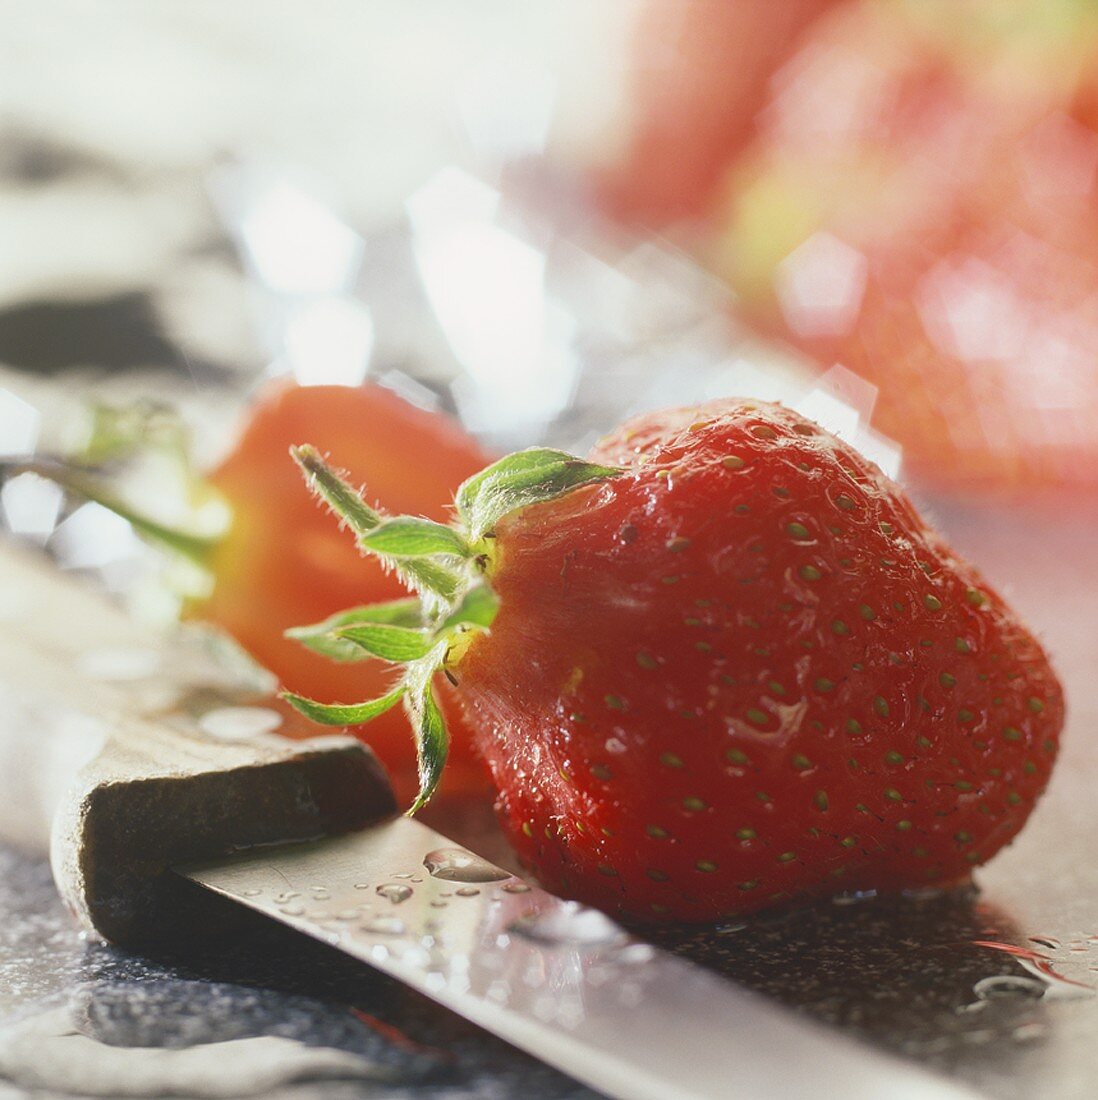 Frisch gewaschene Erdbeere und ein Messer